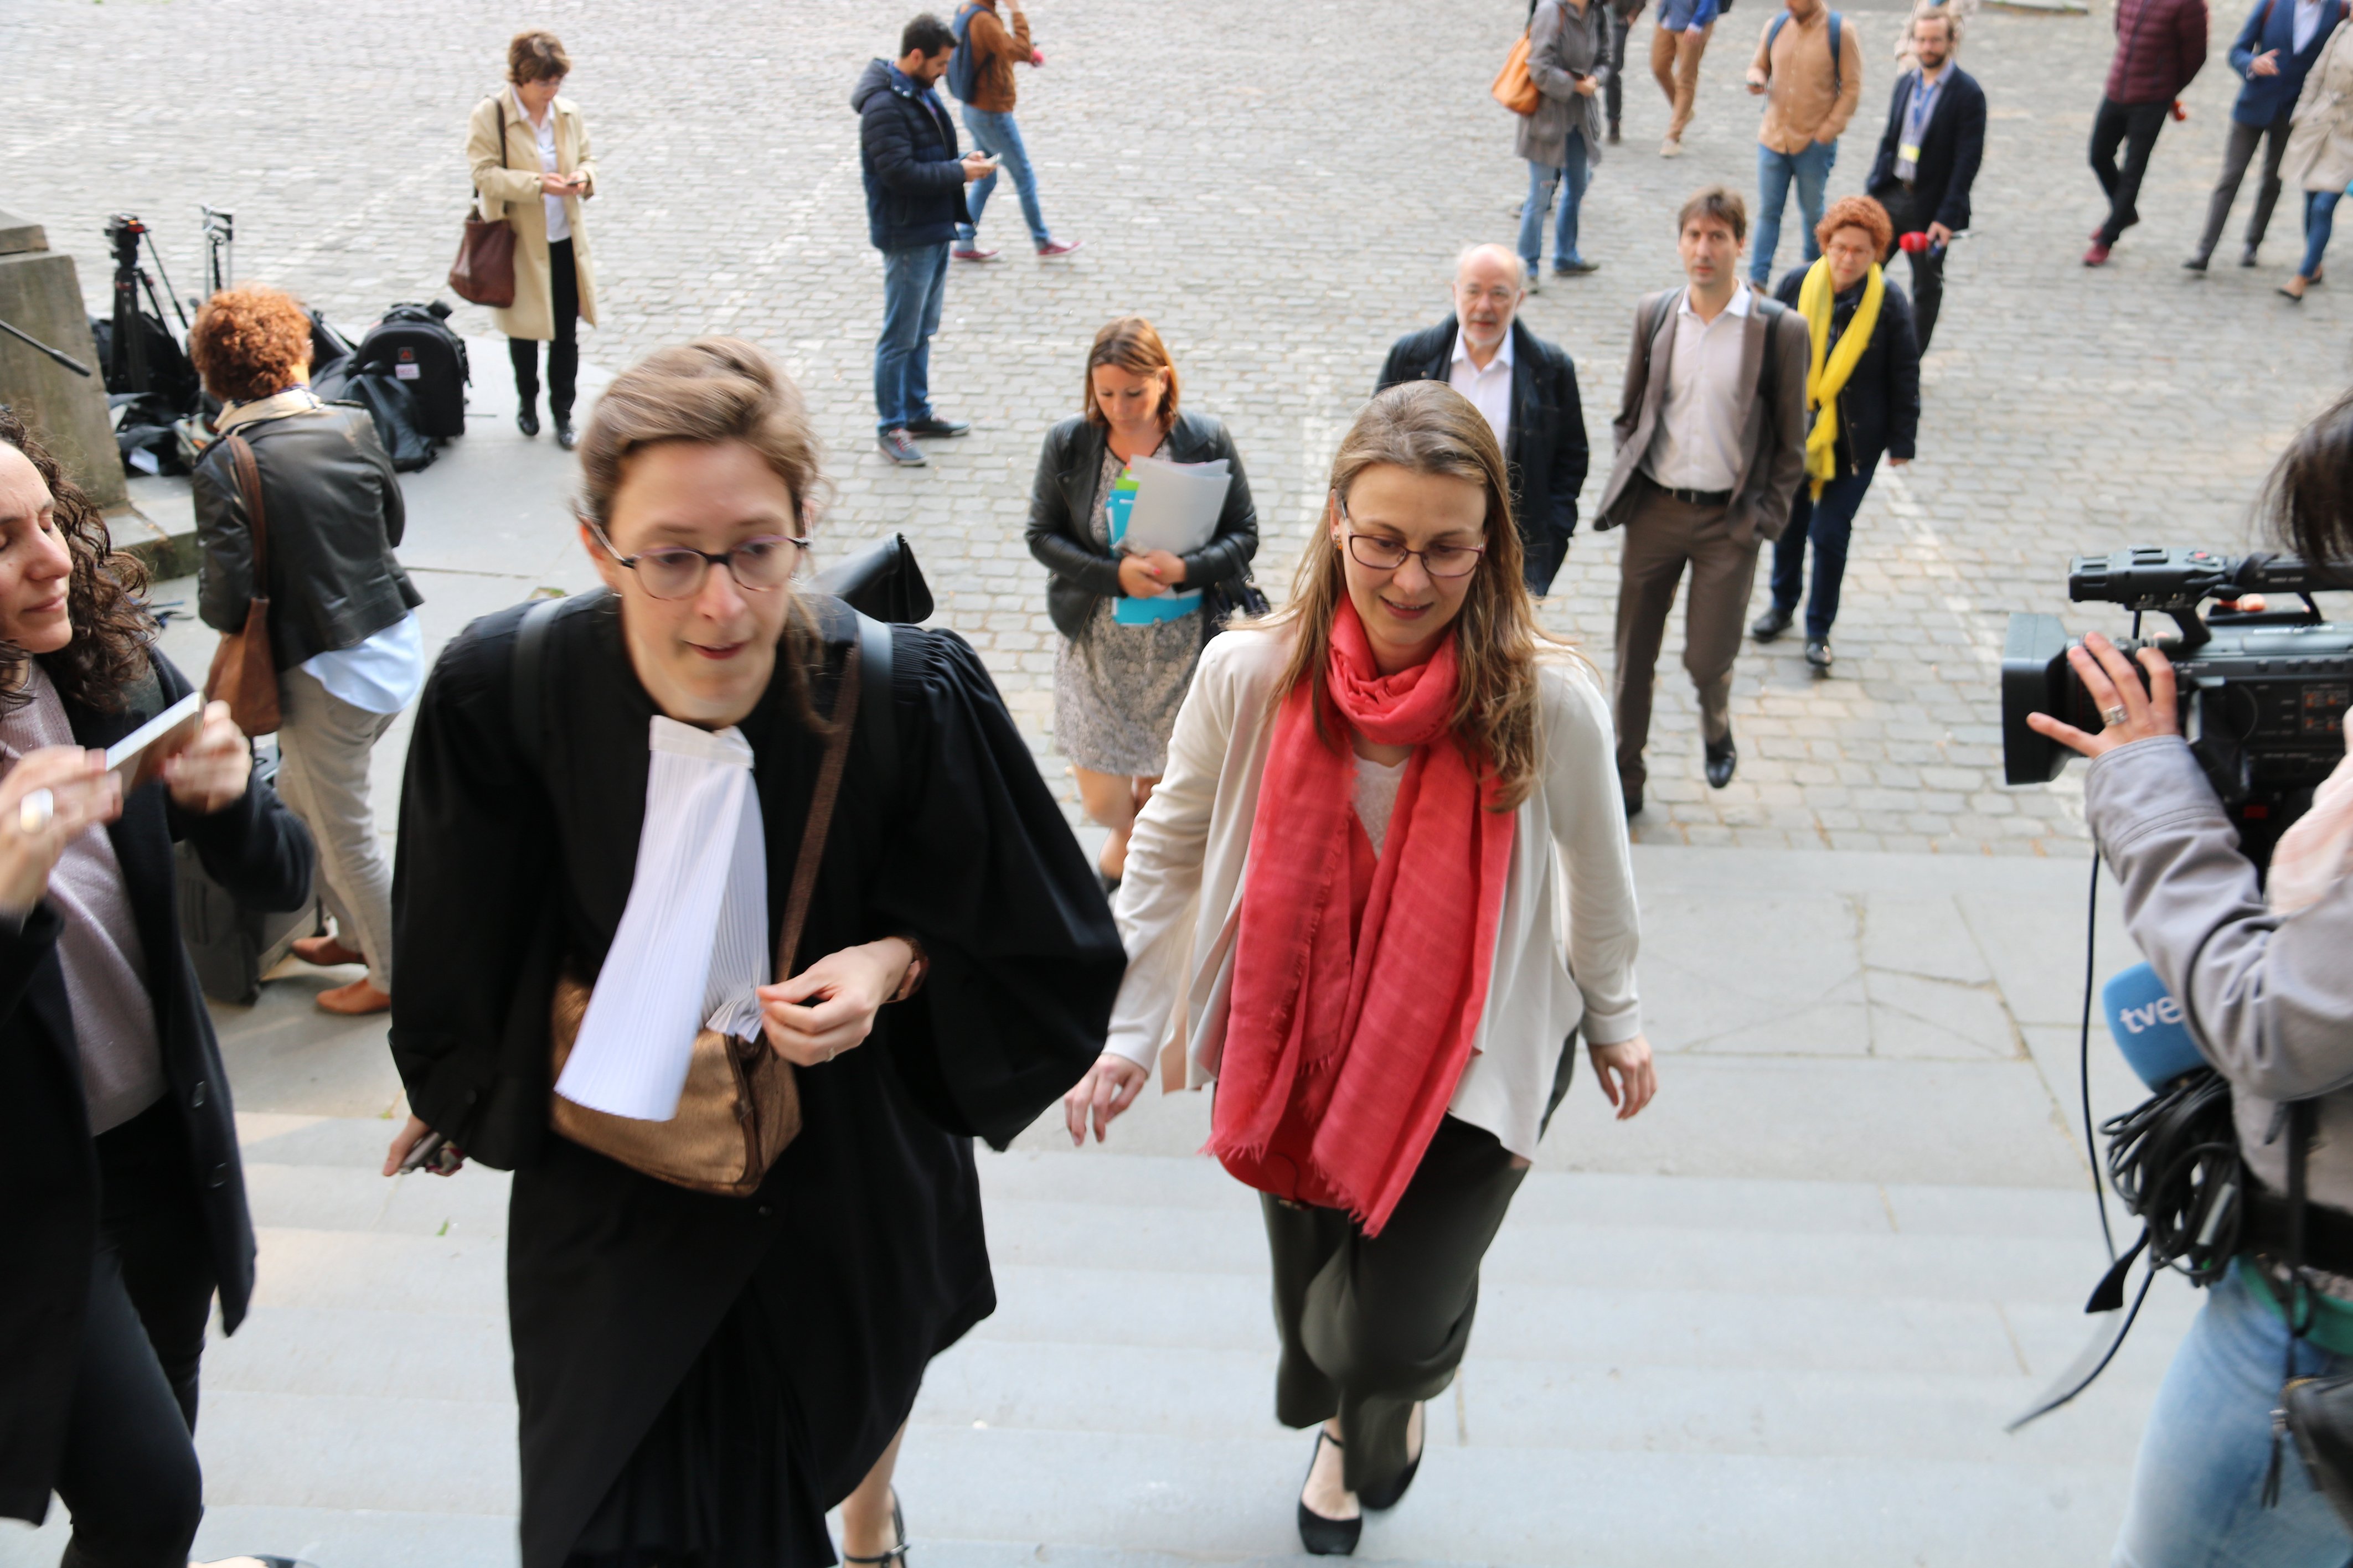 La decisión judicial belga puede afectar a la euroorden de Puigdemont, dice 'Le Soir'